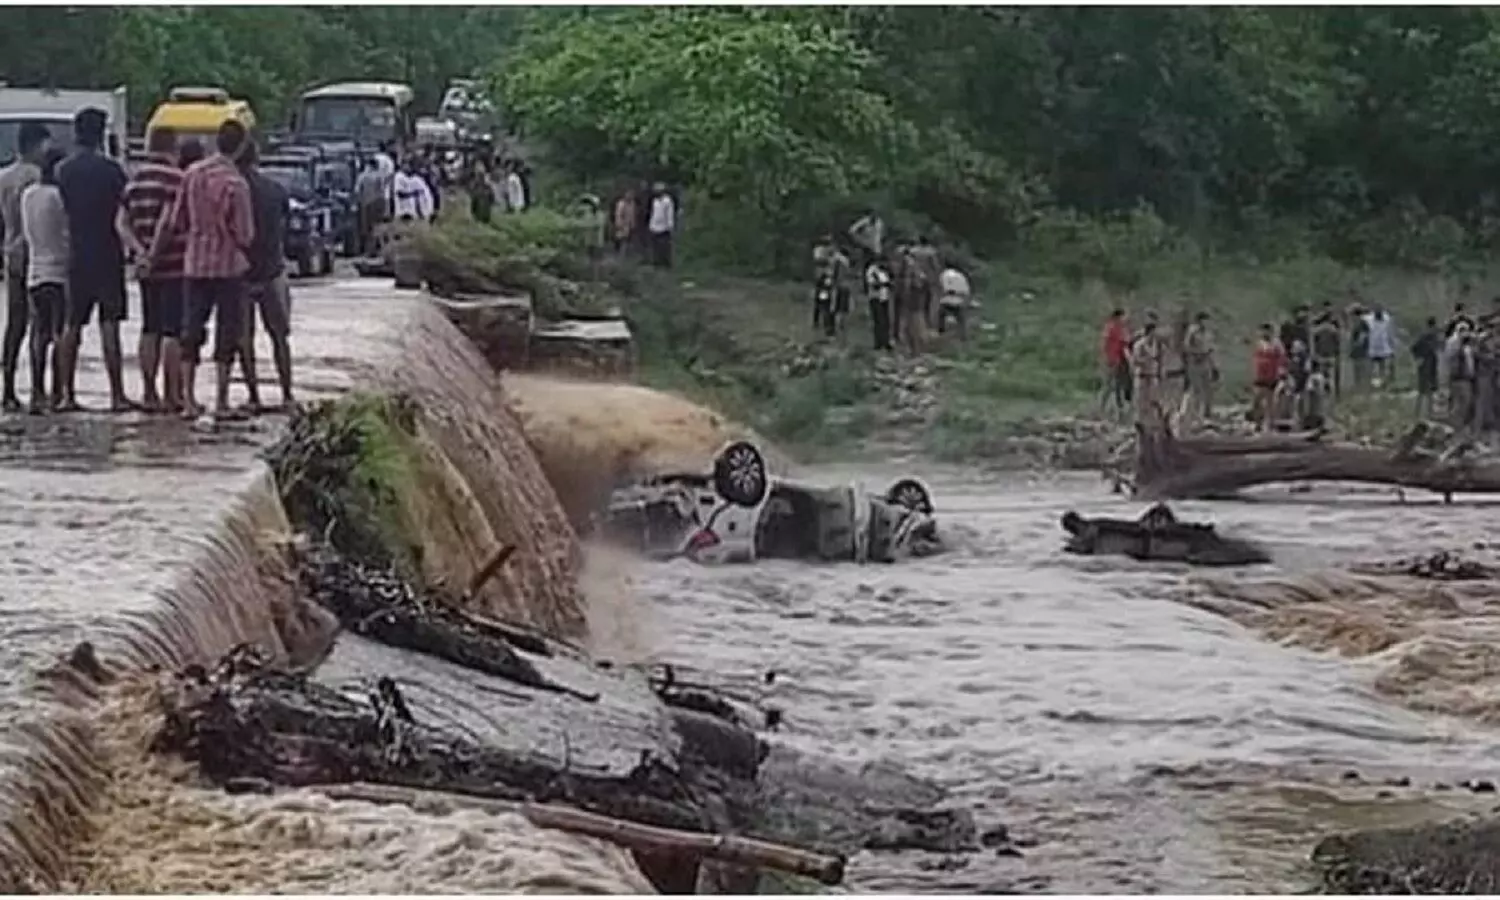 Uttarakhand Car Accident: पर्यटकों से भरी कार नदी में समाई, 9 लोगों की मौत, उत्तराखंड सीएम ने जताया शोक